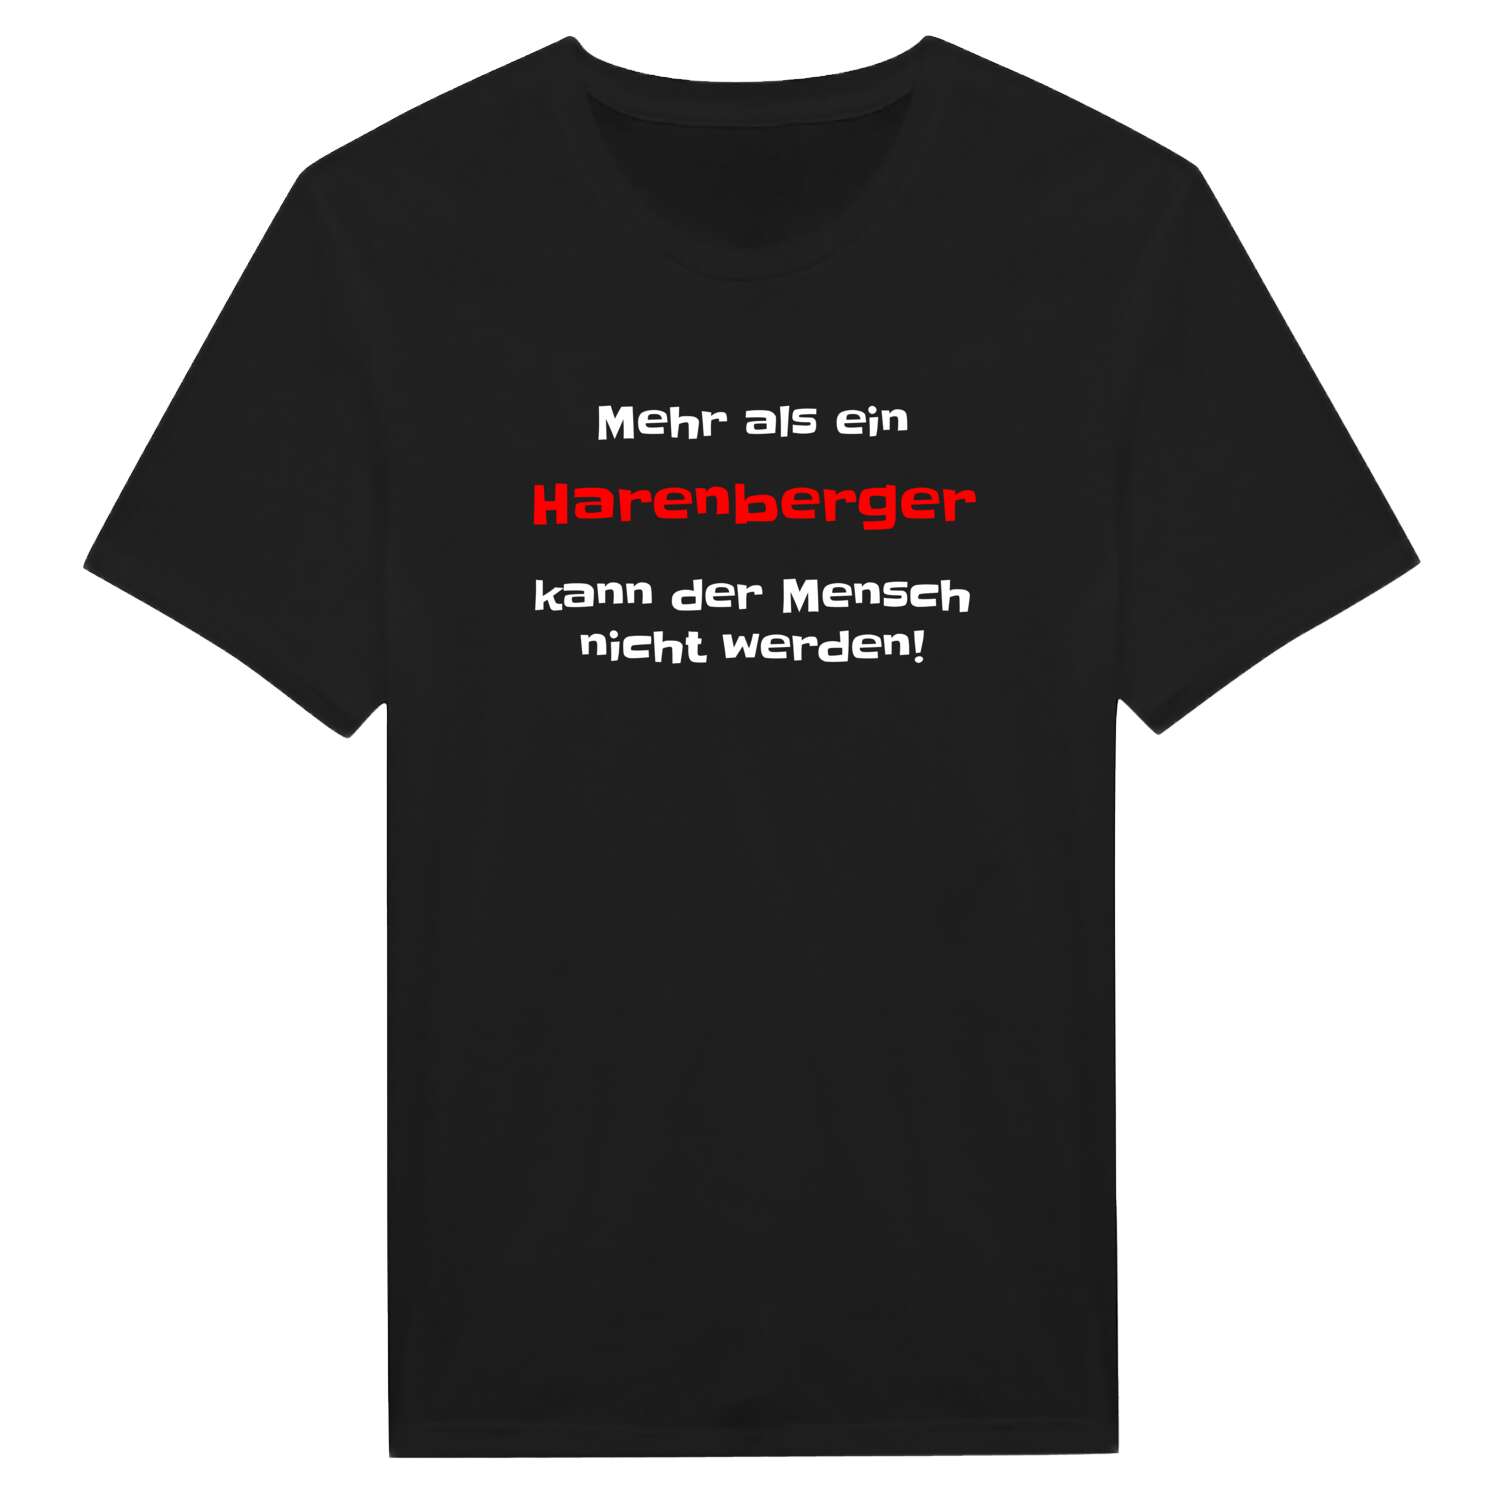 Harenberg T-Shirt »Mehr als ein«